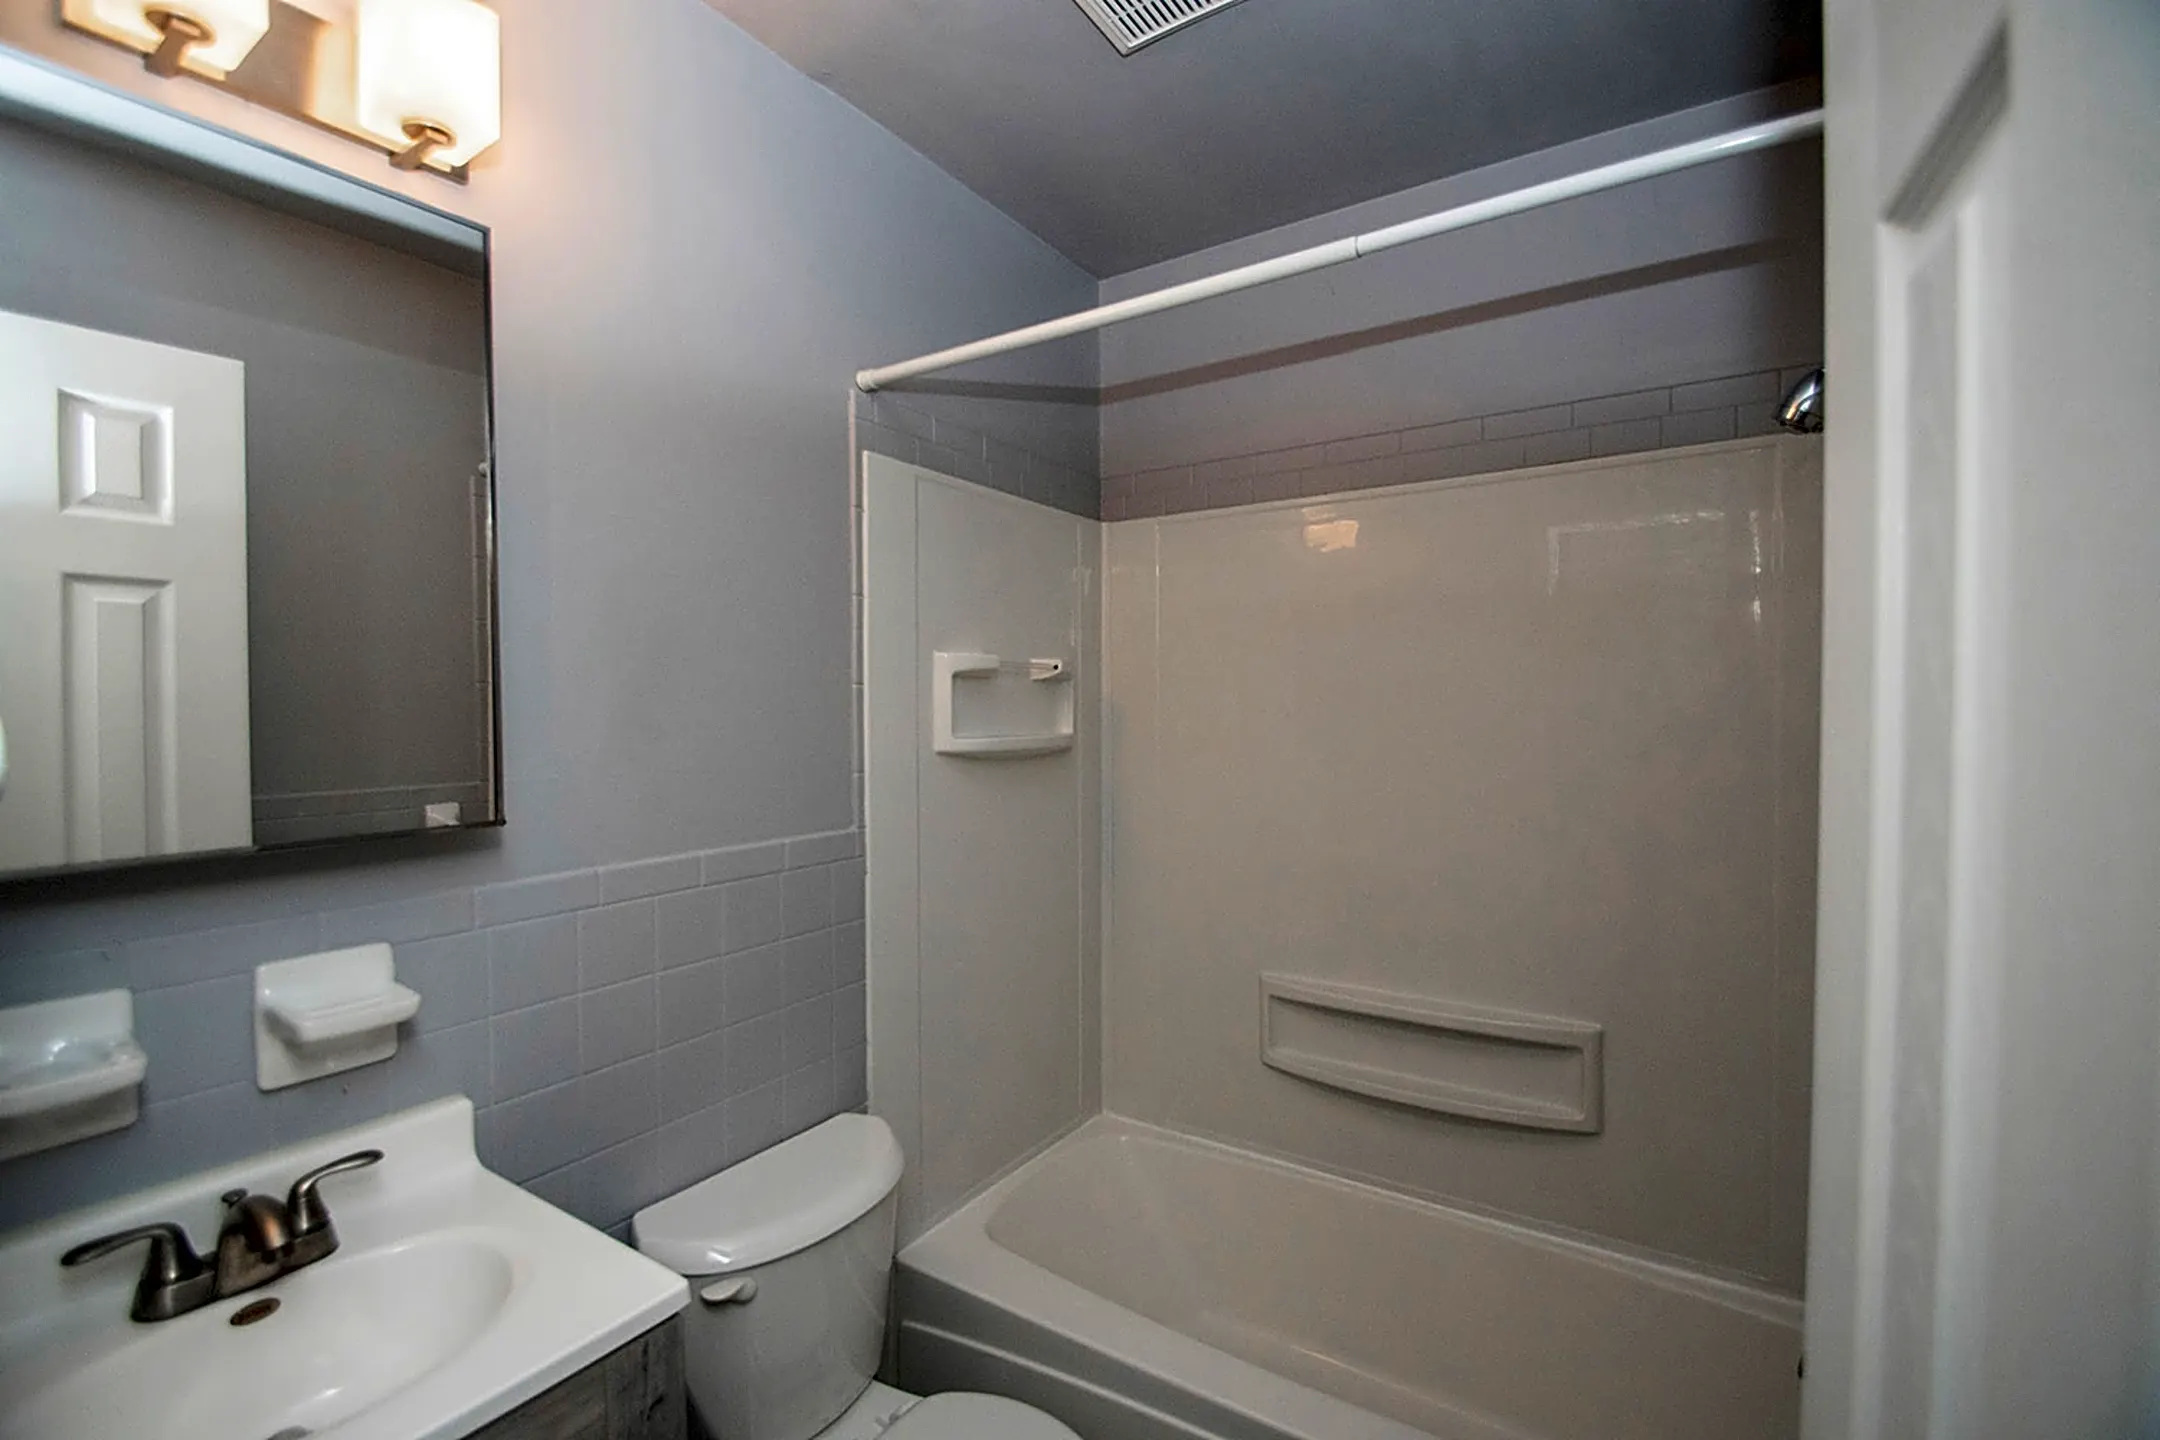 Bathroom - First Flats - Kokomo, IN